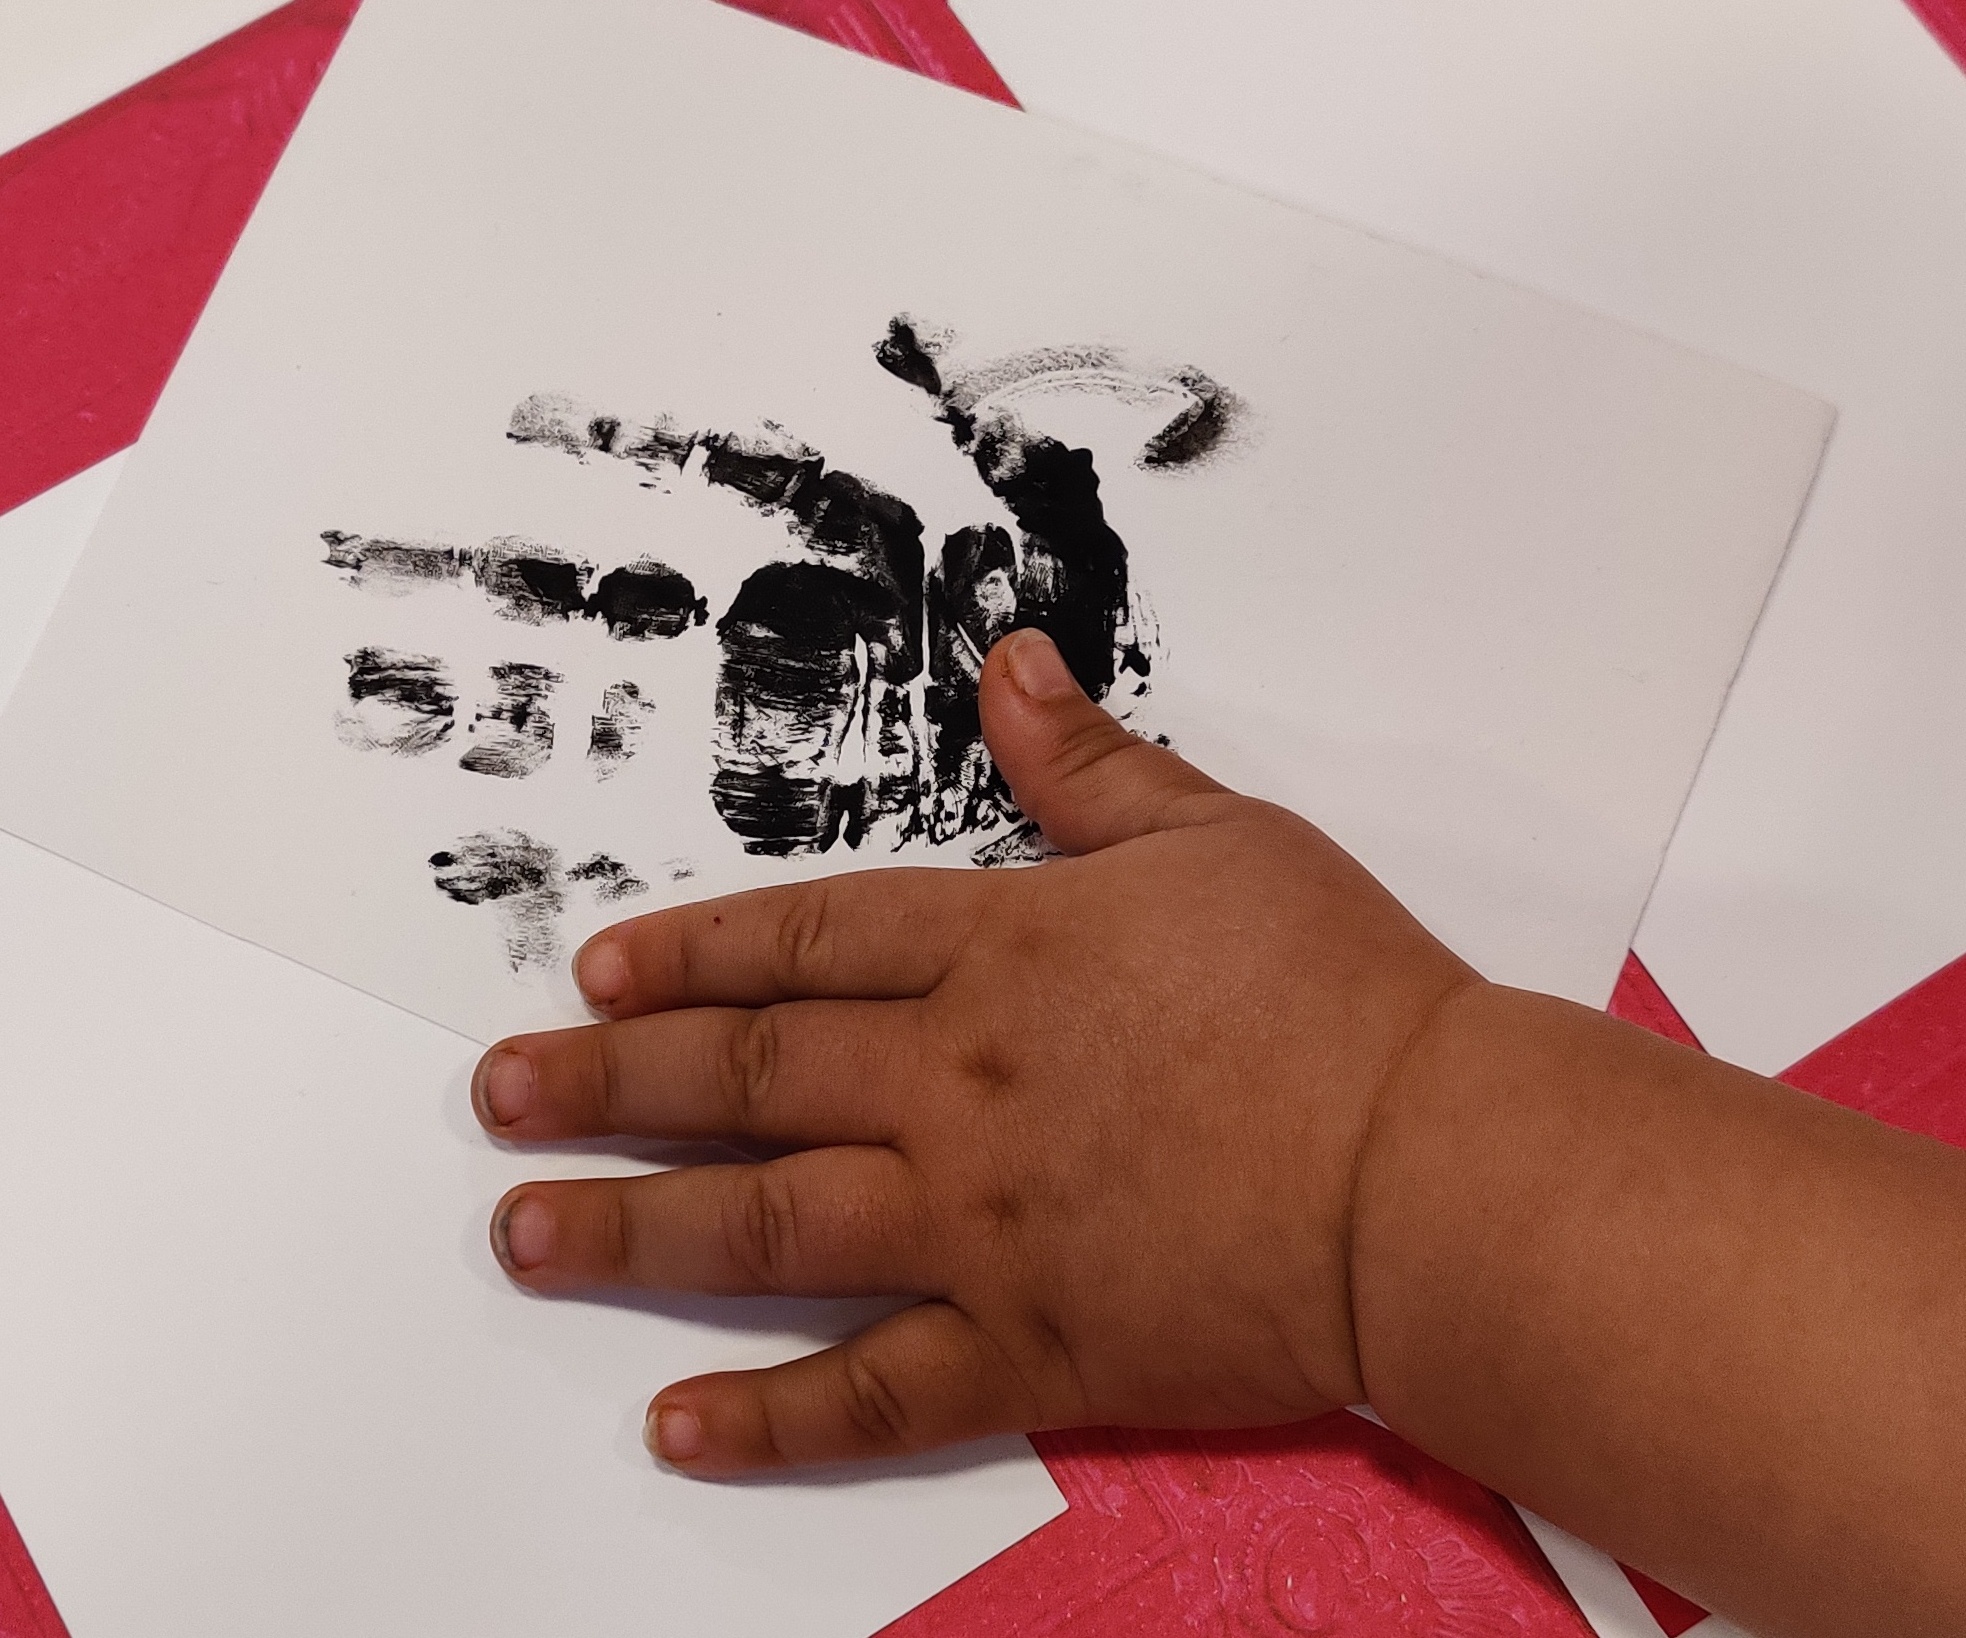 lapsen käsi pöydällä, jossa on paperilla maalattu käsi